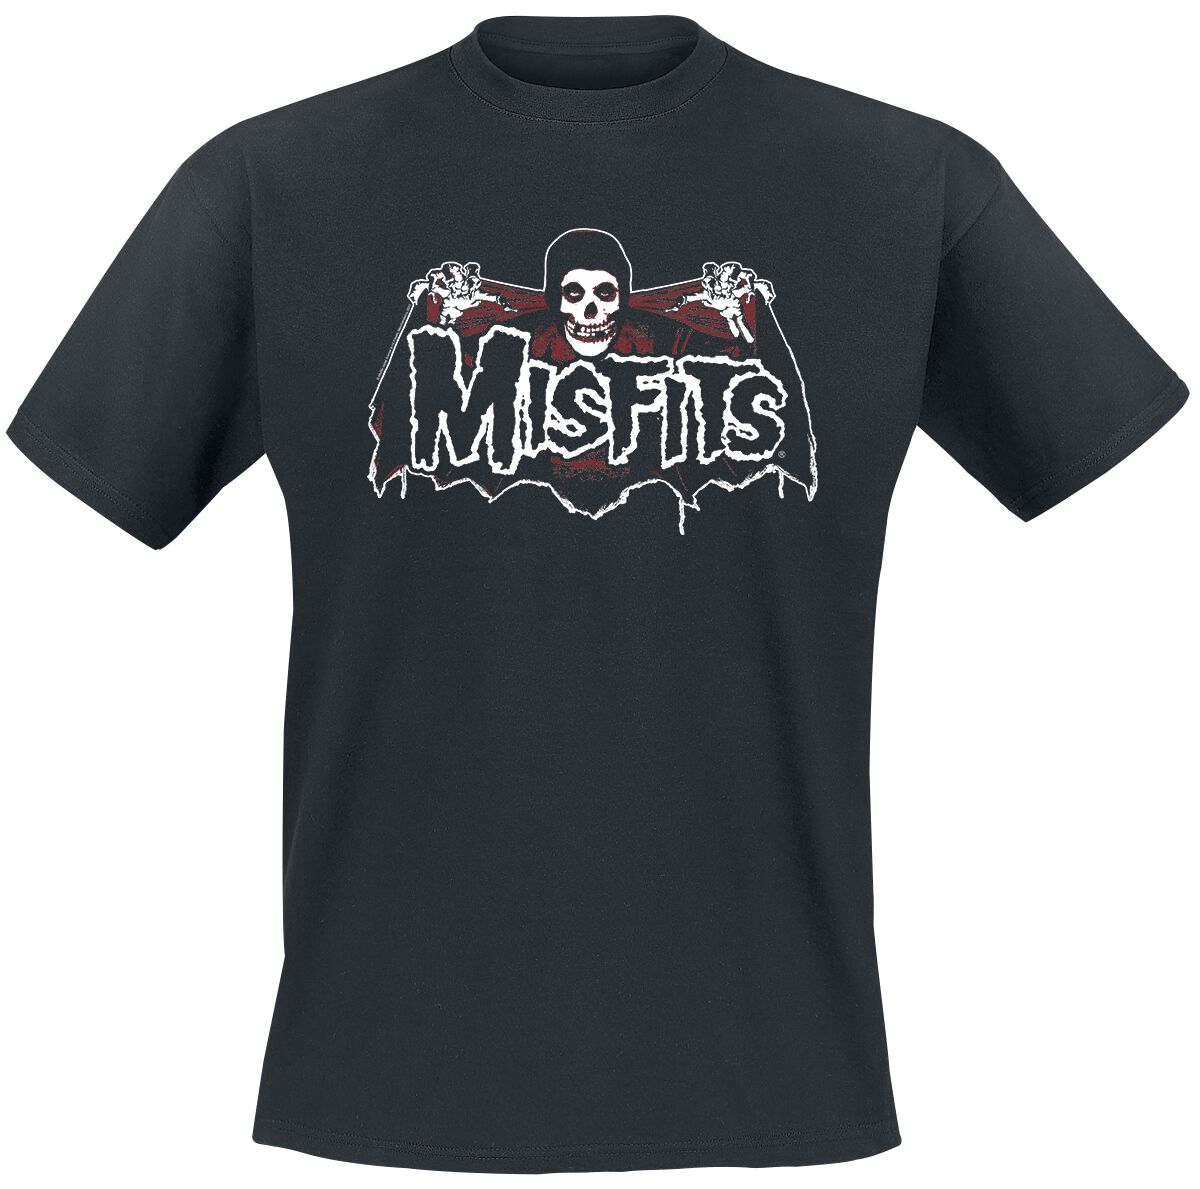 Misfits T-Shirt - Batfiend - S bis XXL - für Männer - Größe S - schwarz  - Lizenziertes Merchandise!